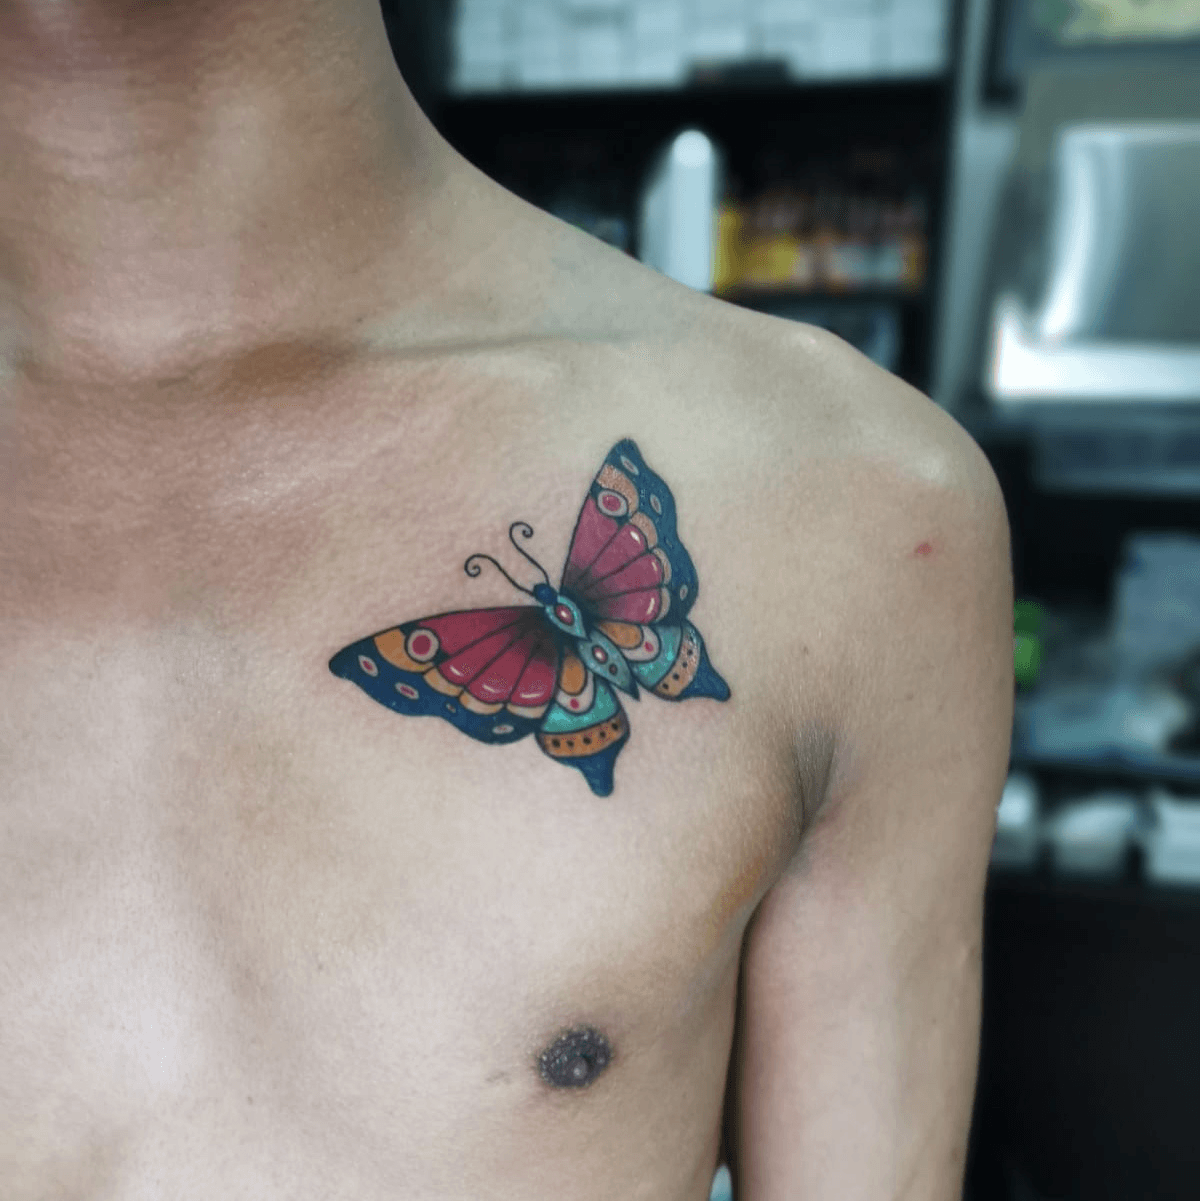 Yellow Black 3D Butterfly Tattoo On Arm Butterfly Tattoo HD wallpaper   Peakpx